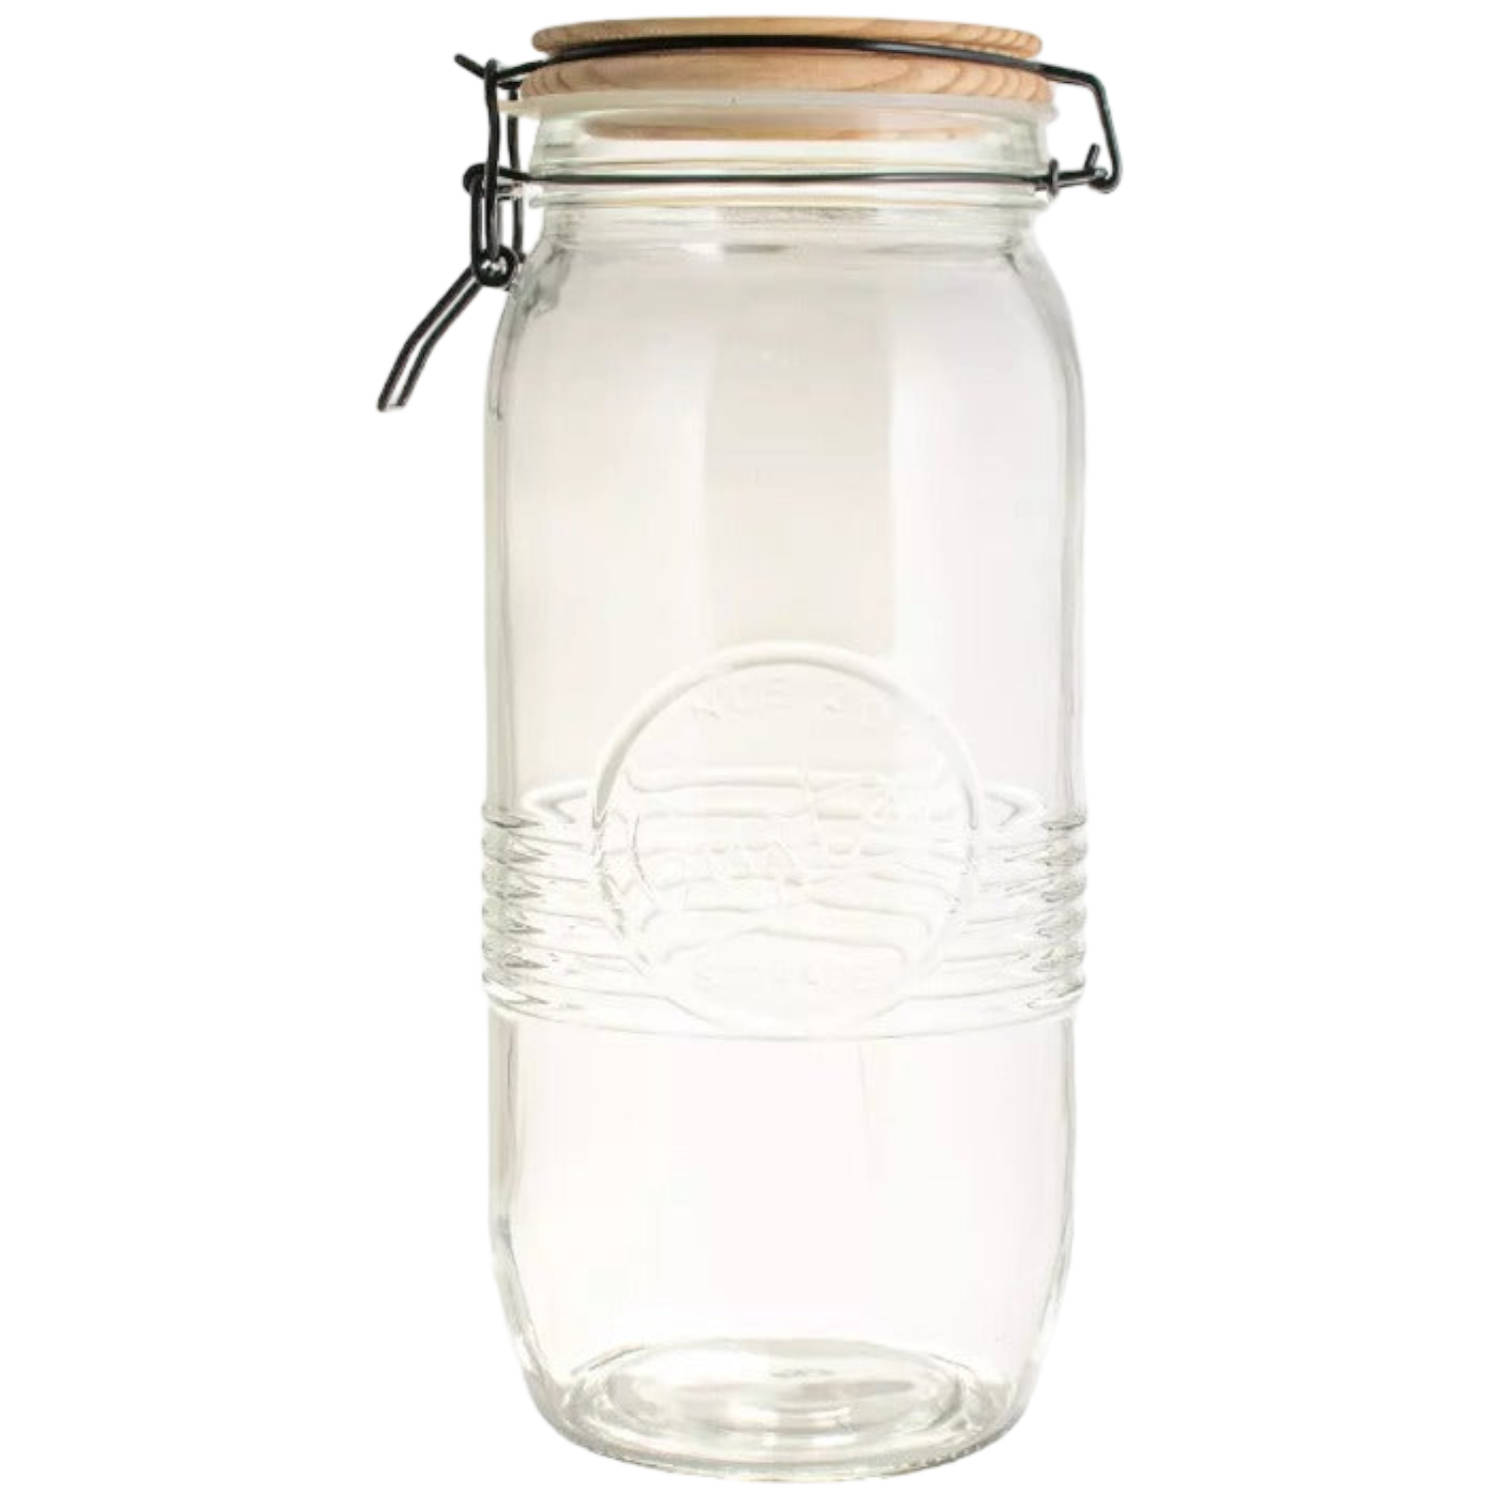 Gusta - Voorraadpot 'Knut' - Glas, 2 liter